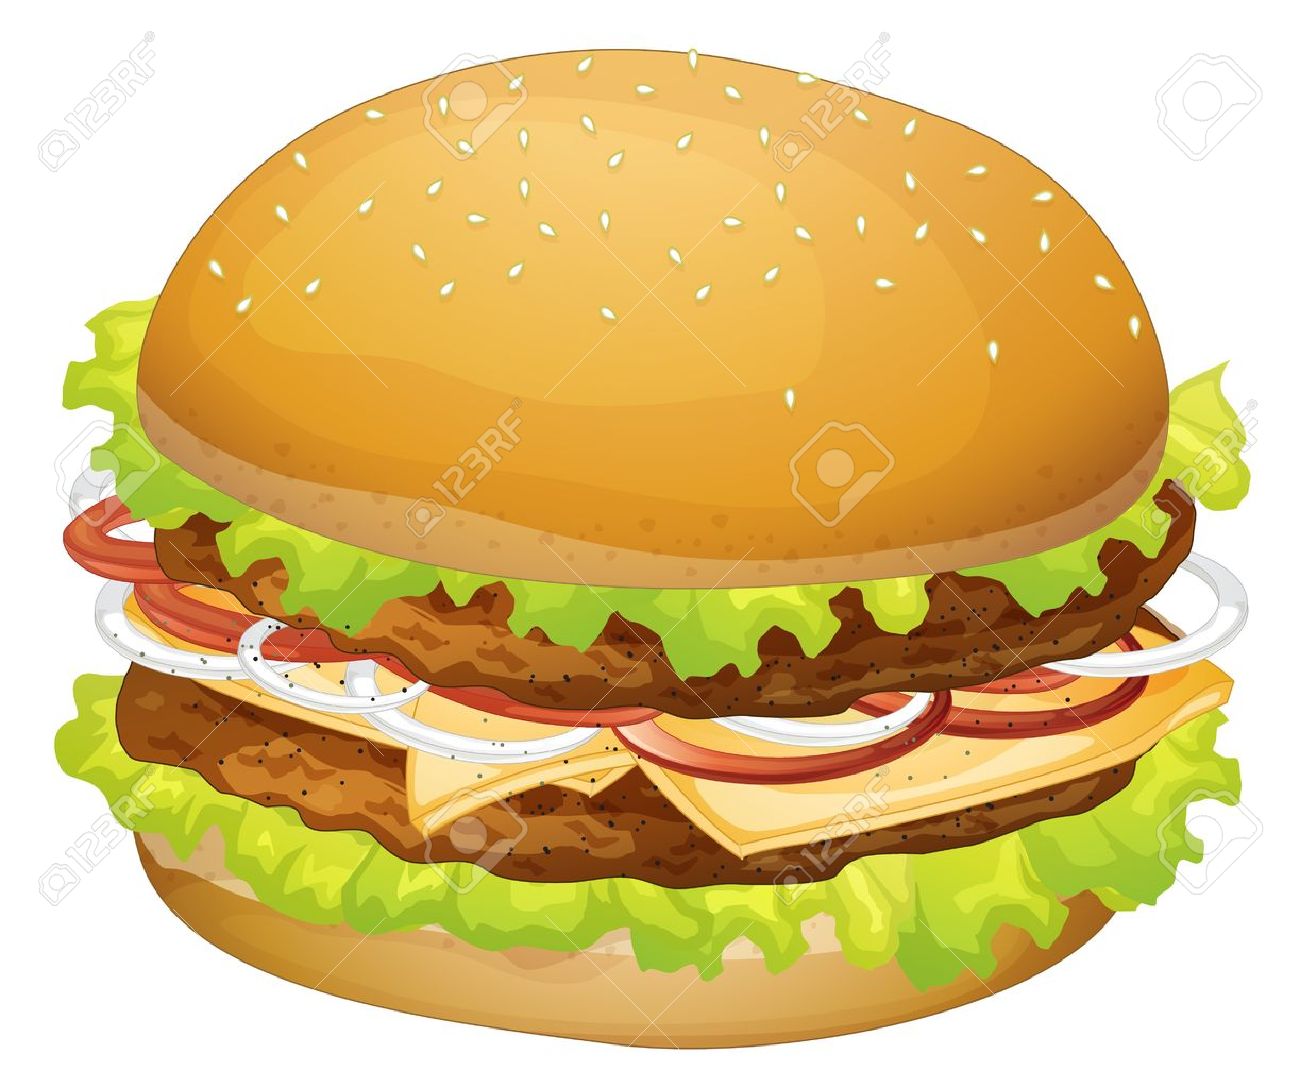 Clipart burger - ClipartFest